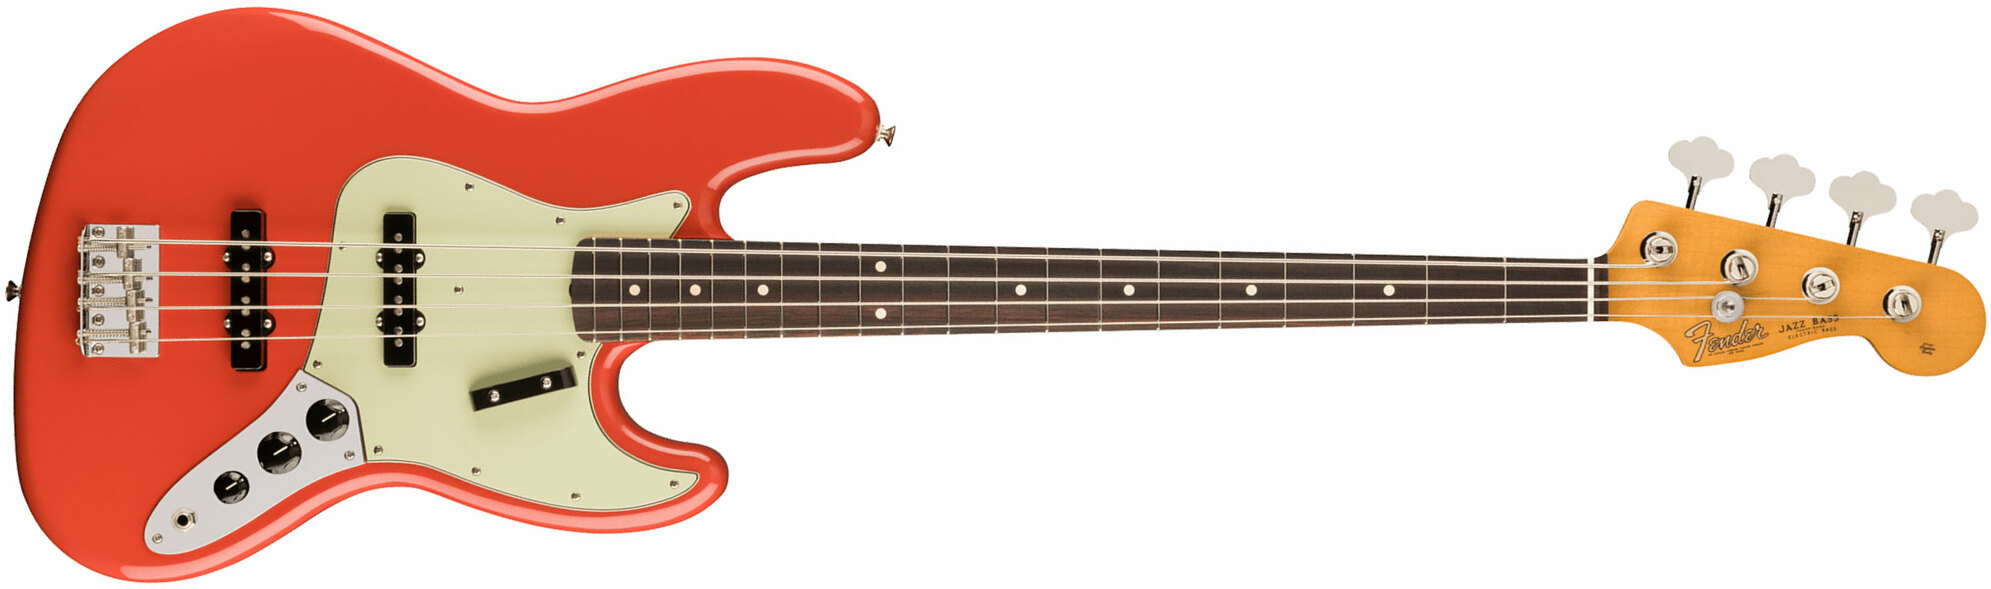 Fender Jazz Bass 60s Vintera Ii Mex Rw - Fiesta Red - Bajo eléctrico de cuerpo sólido - Main picture